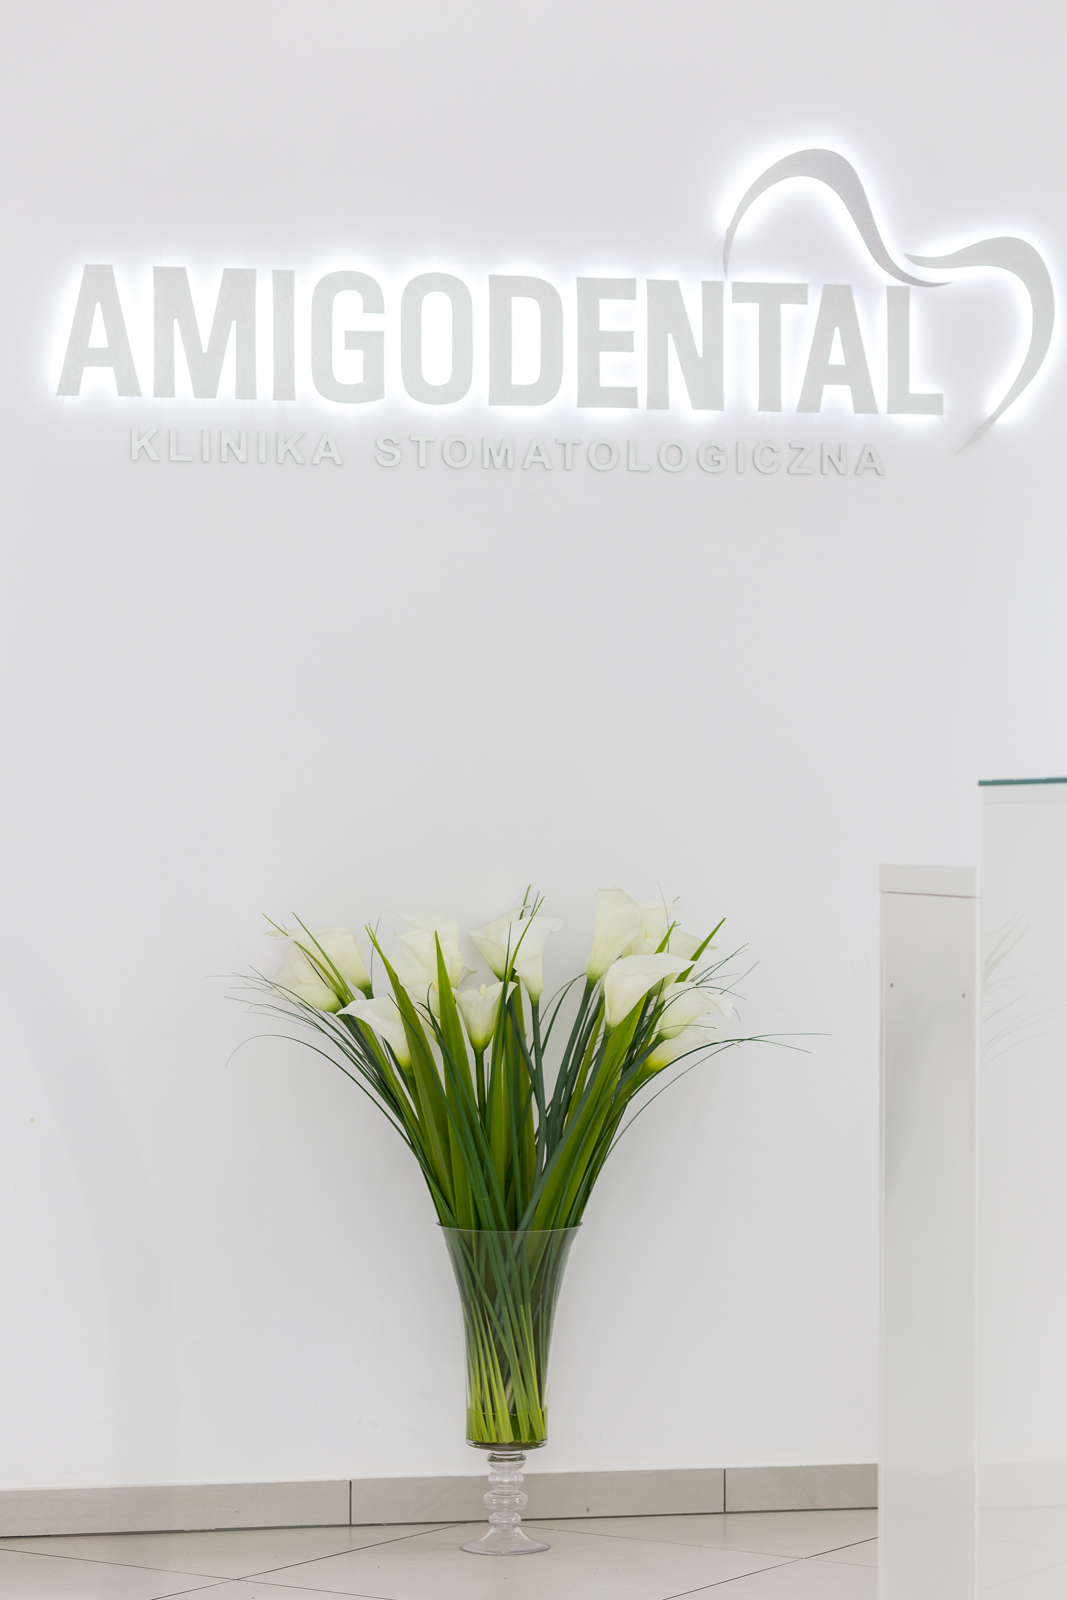 Klinika dentystyczna Amigodental Łódź